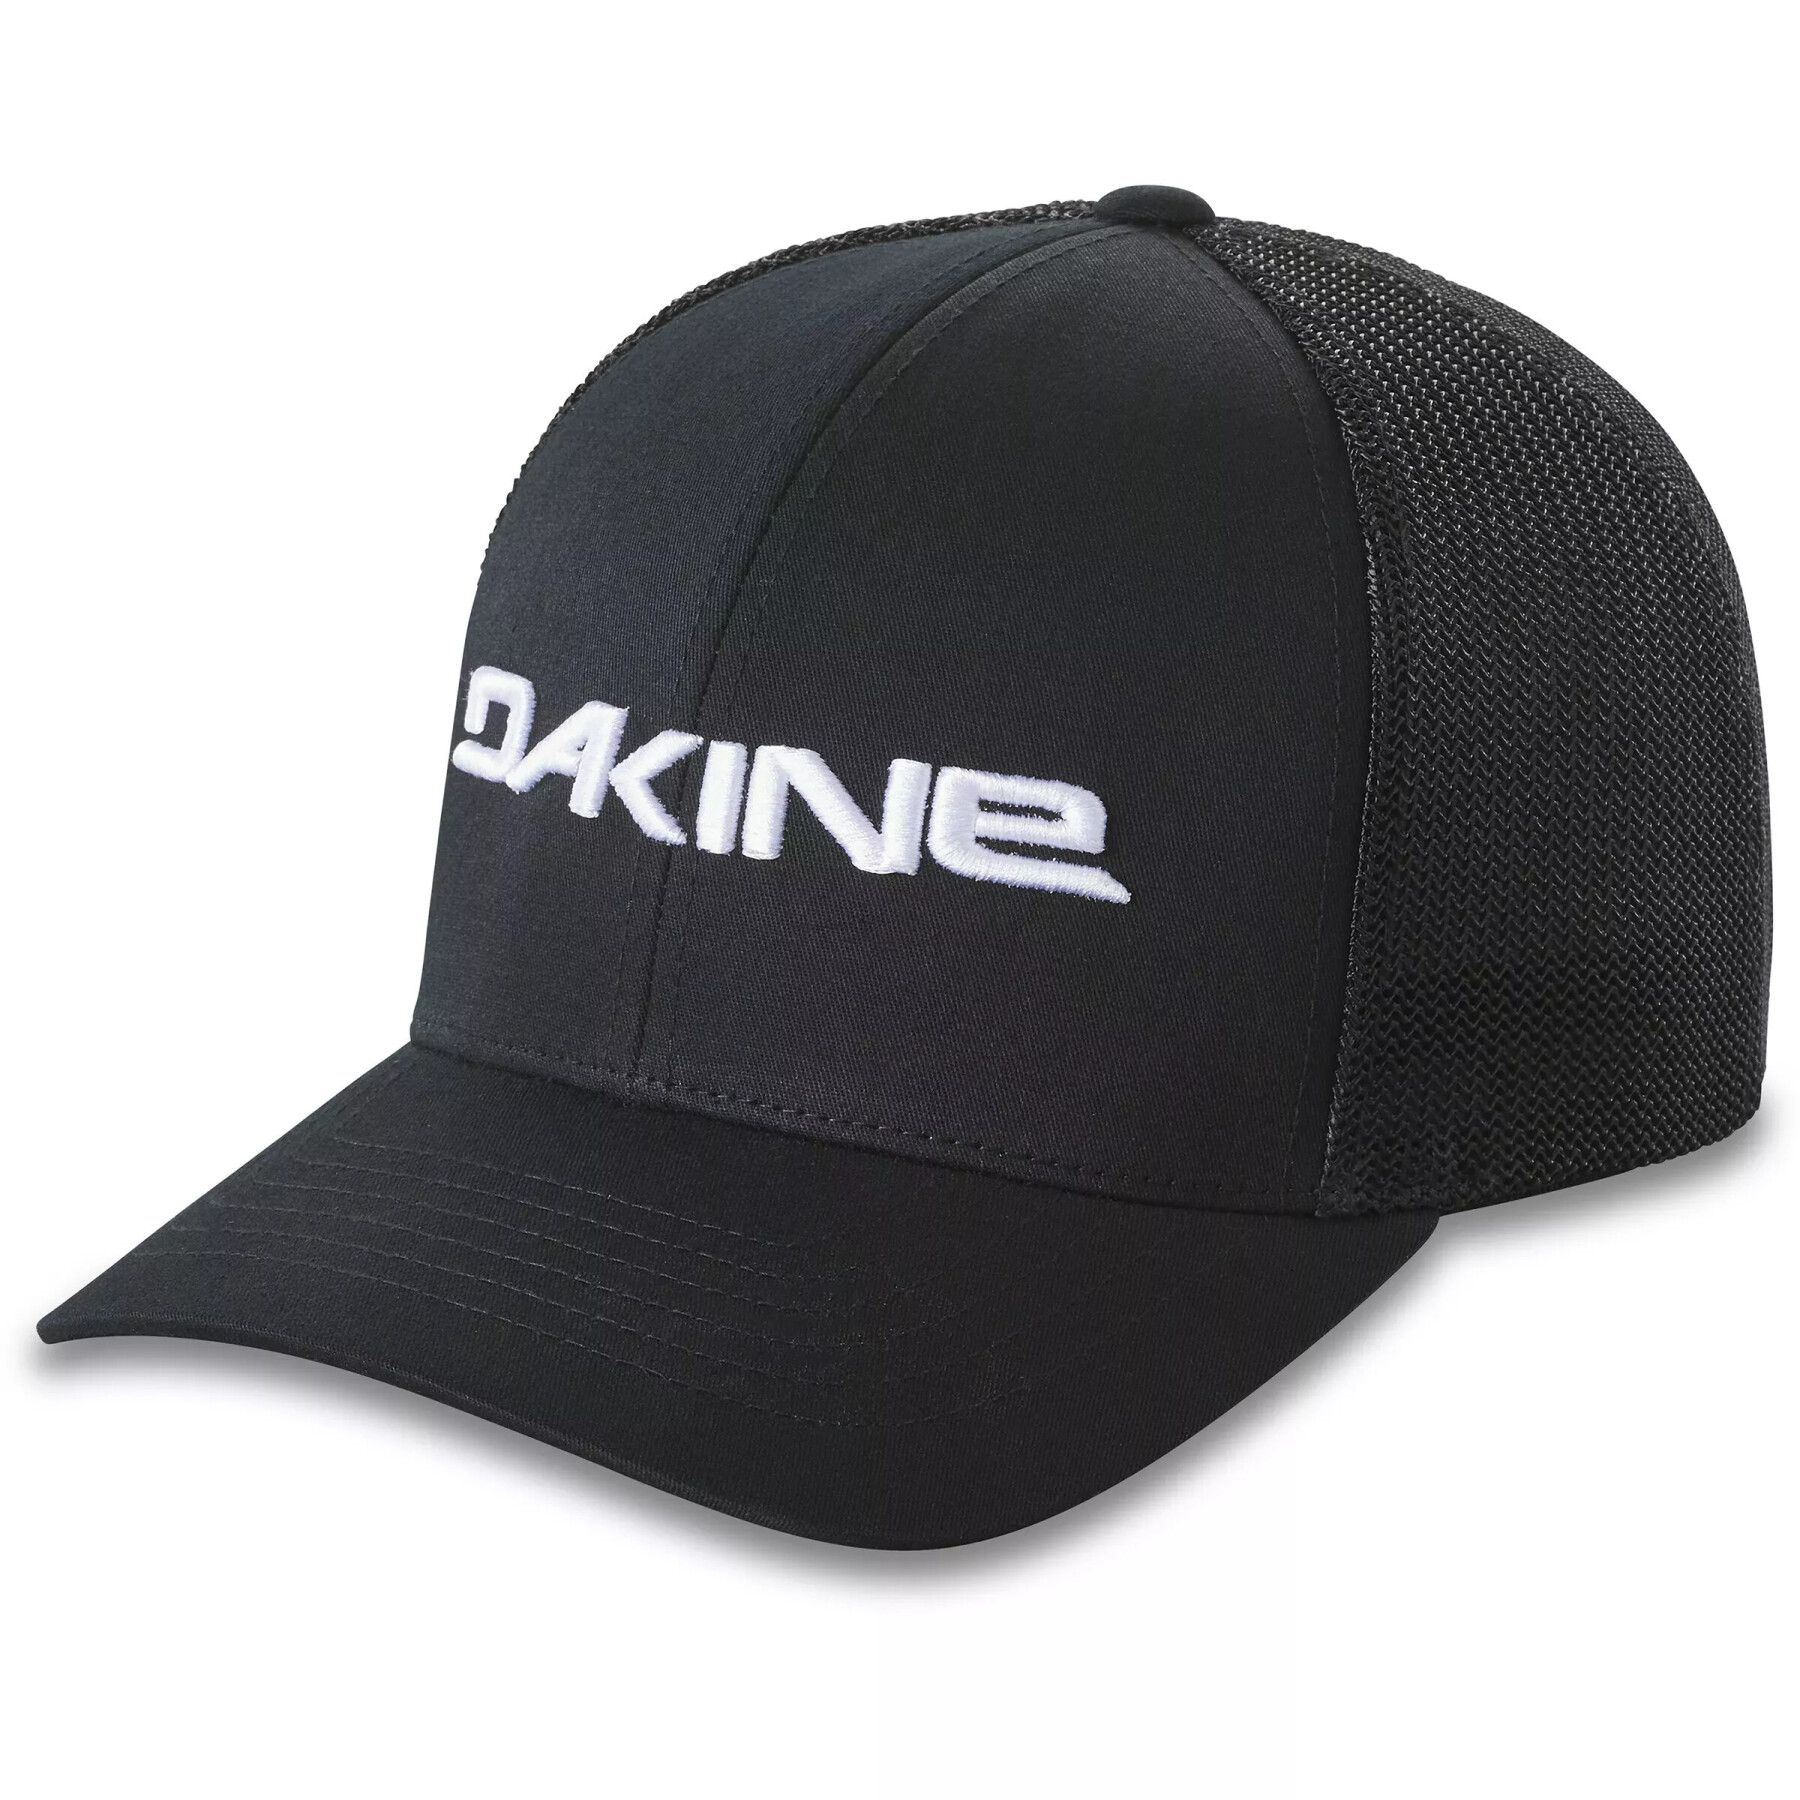 Trucker cap Dakine Sideline